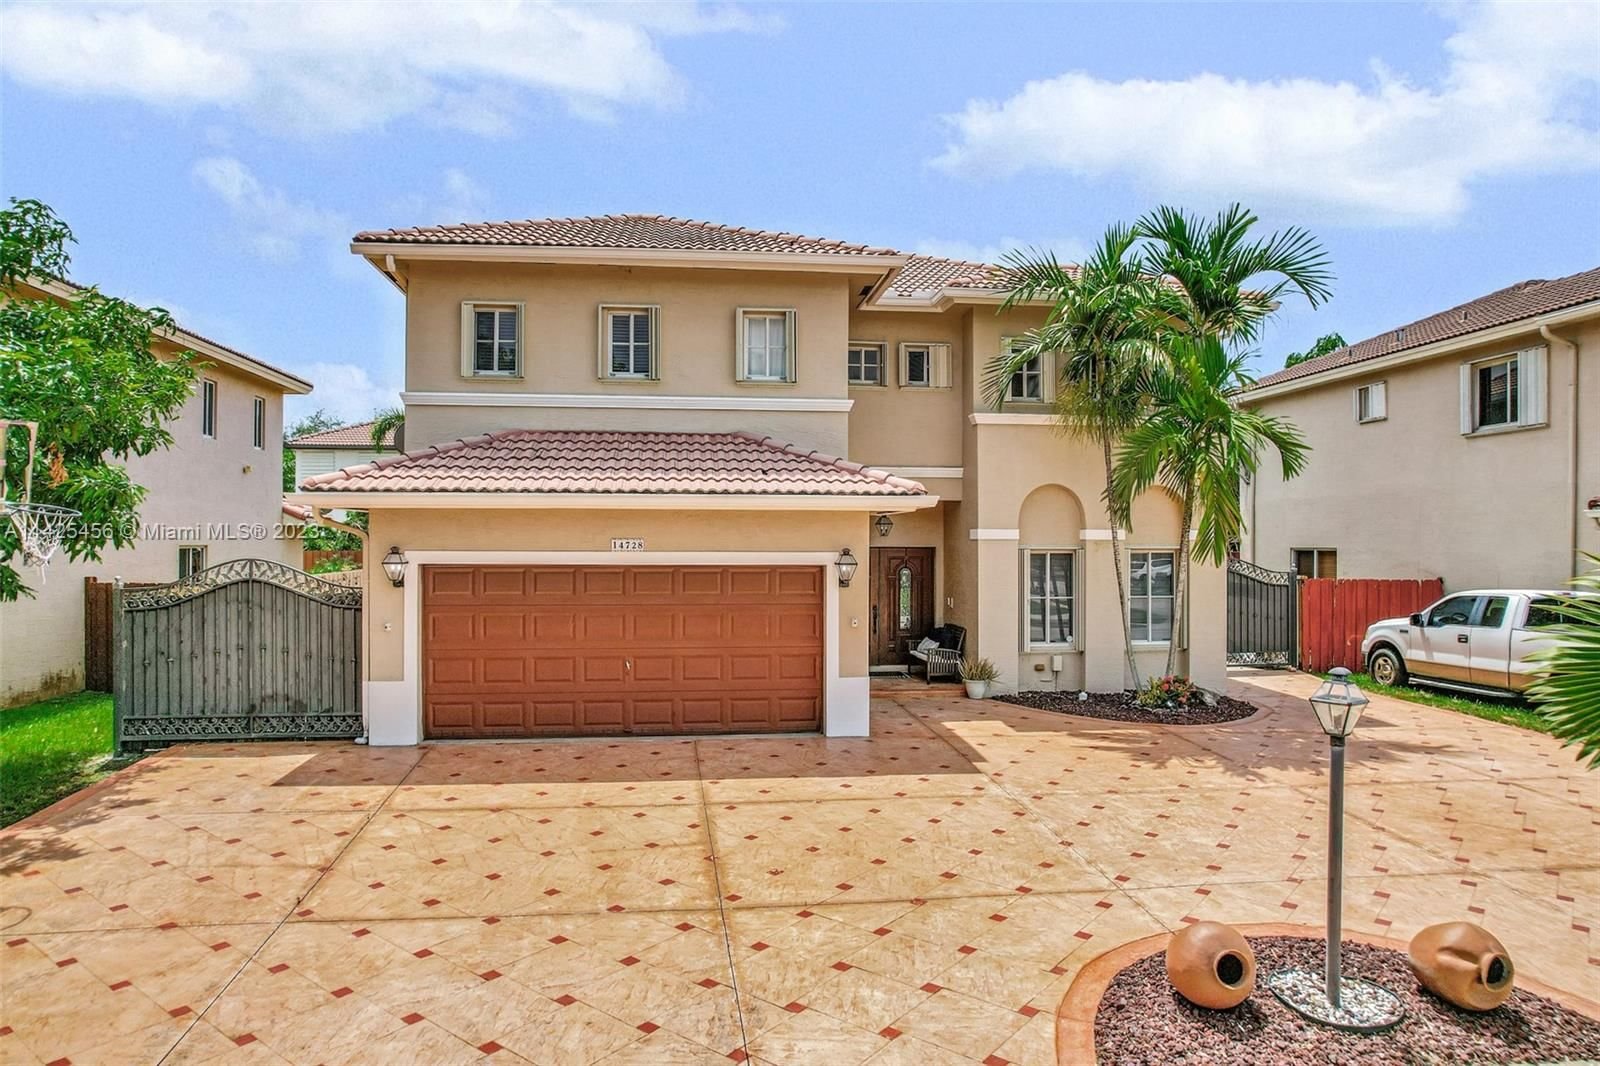 Real estate property located at 14728 158th Path, Miami-Dade County, Miami, FL